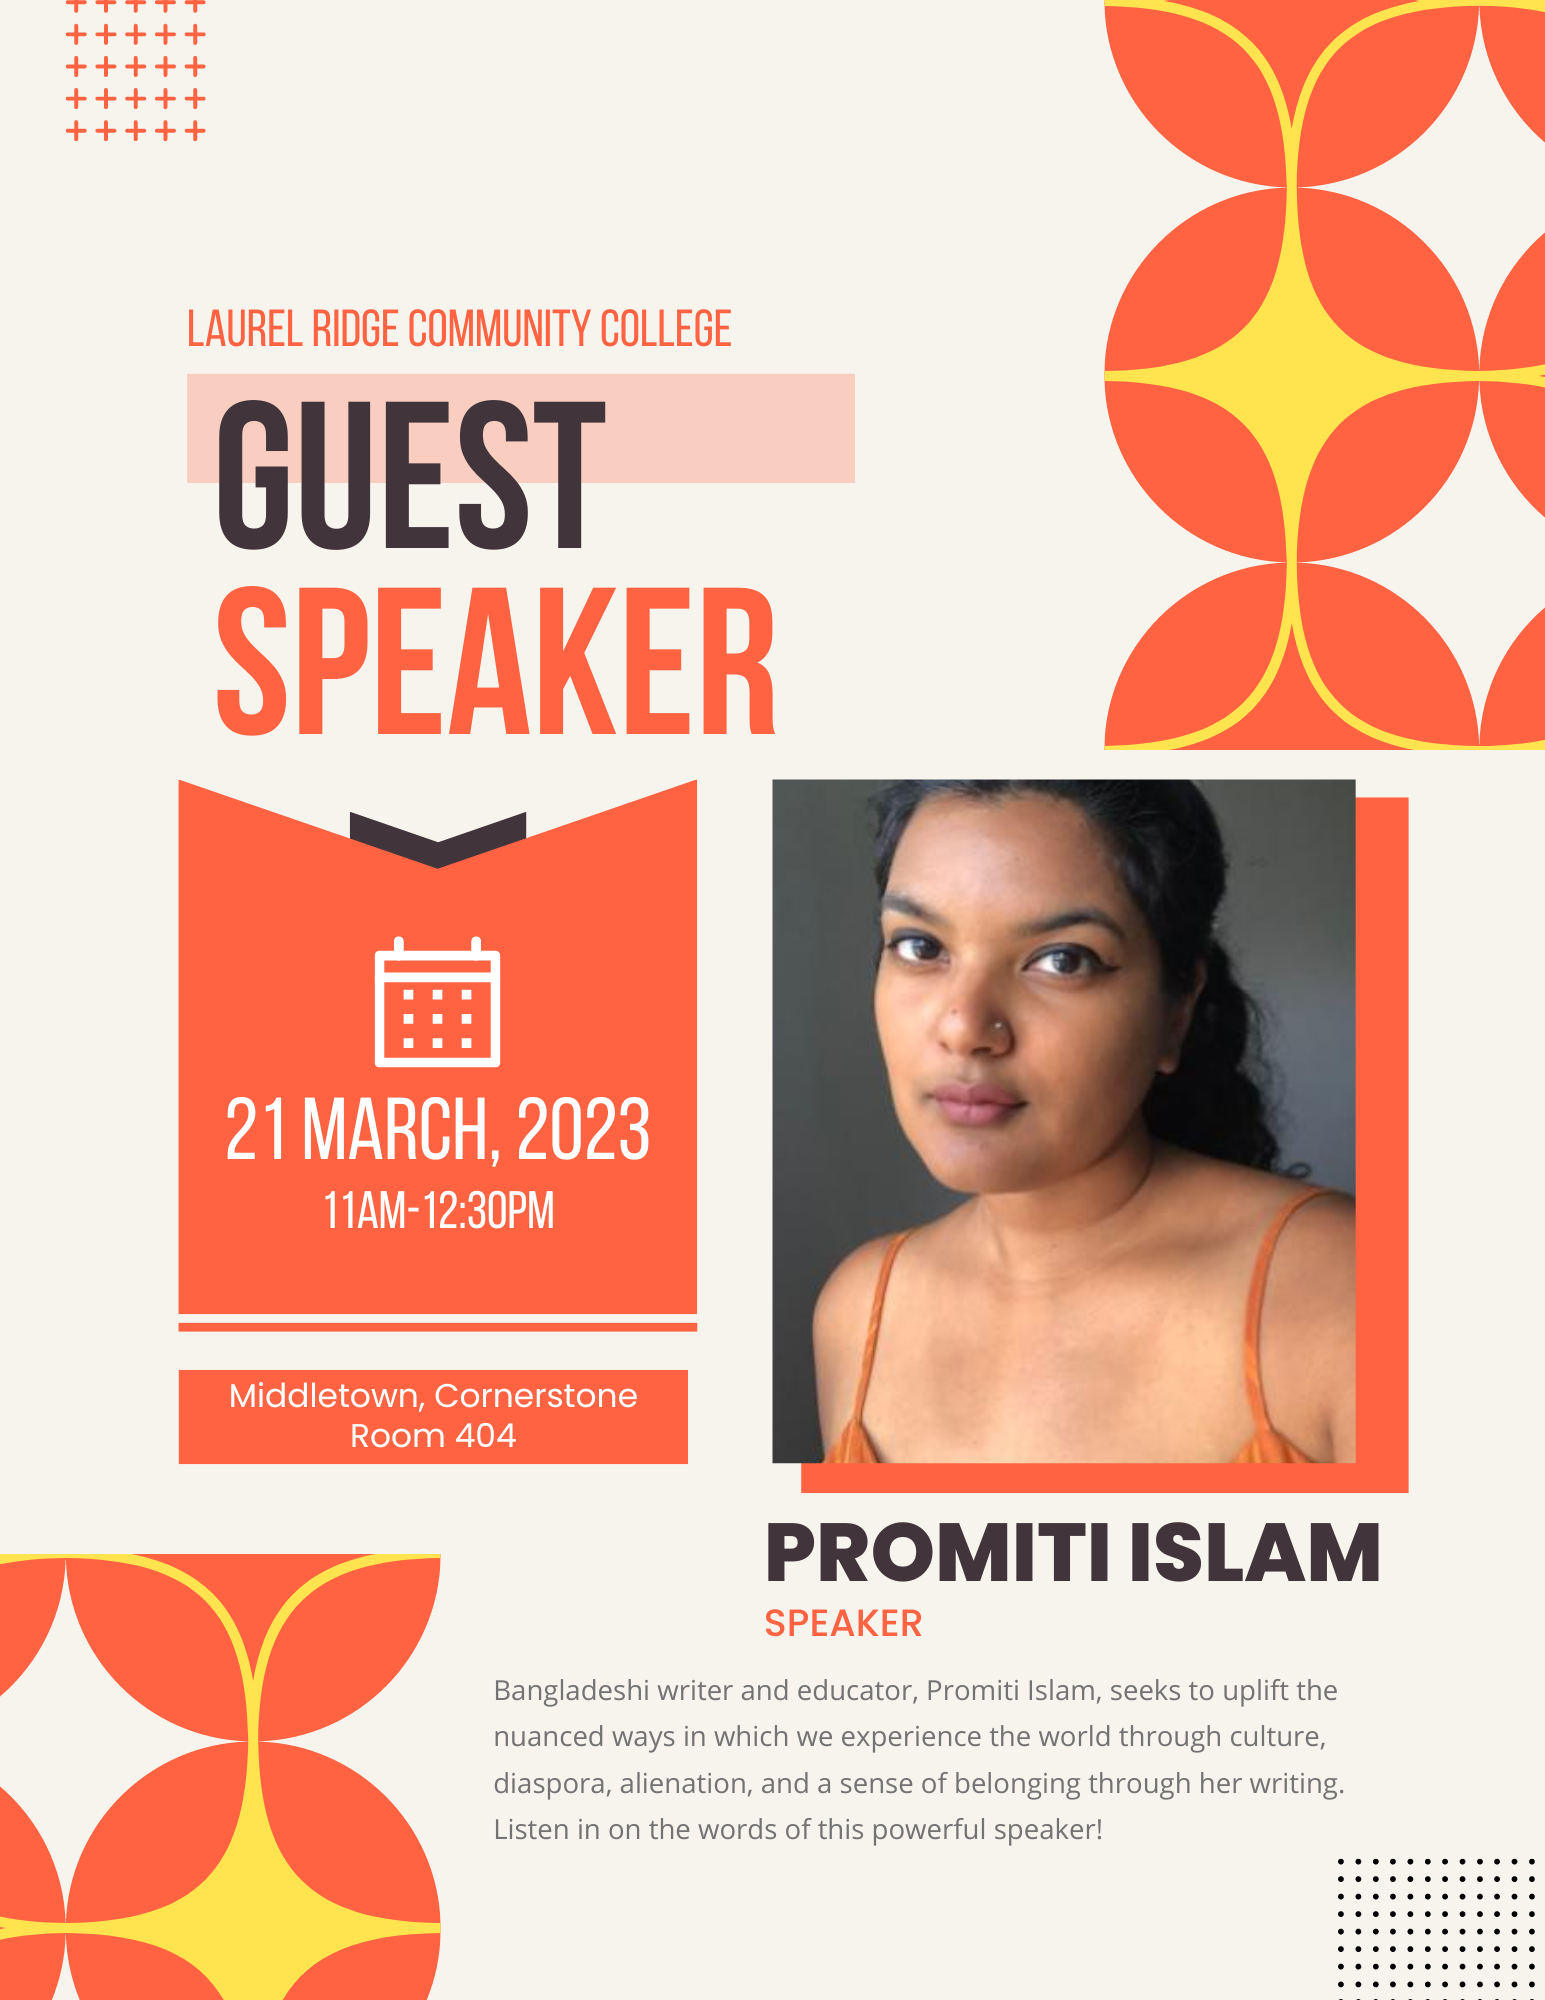 321 Guest Speaker - Promiti Islam